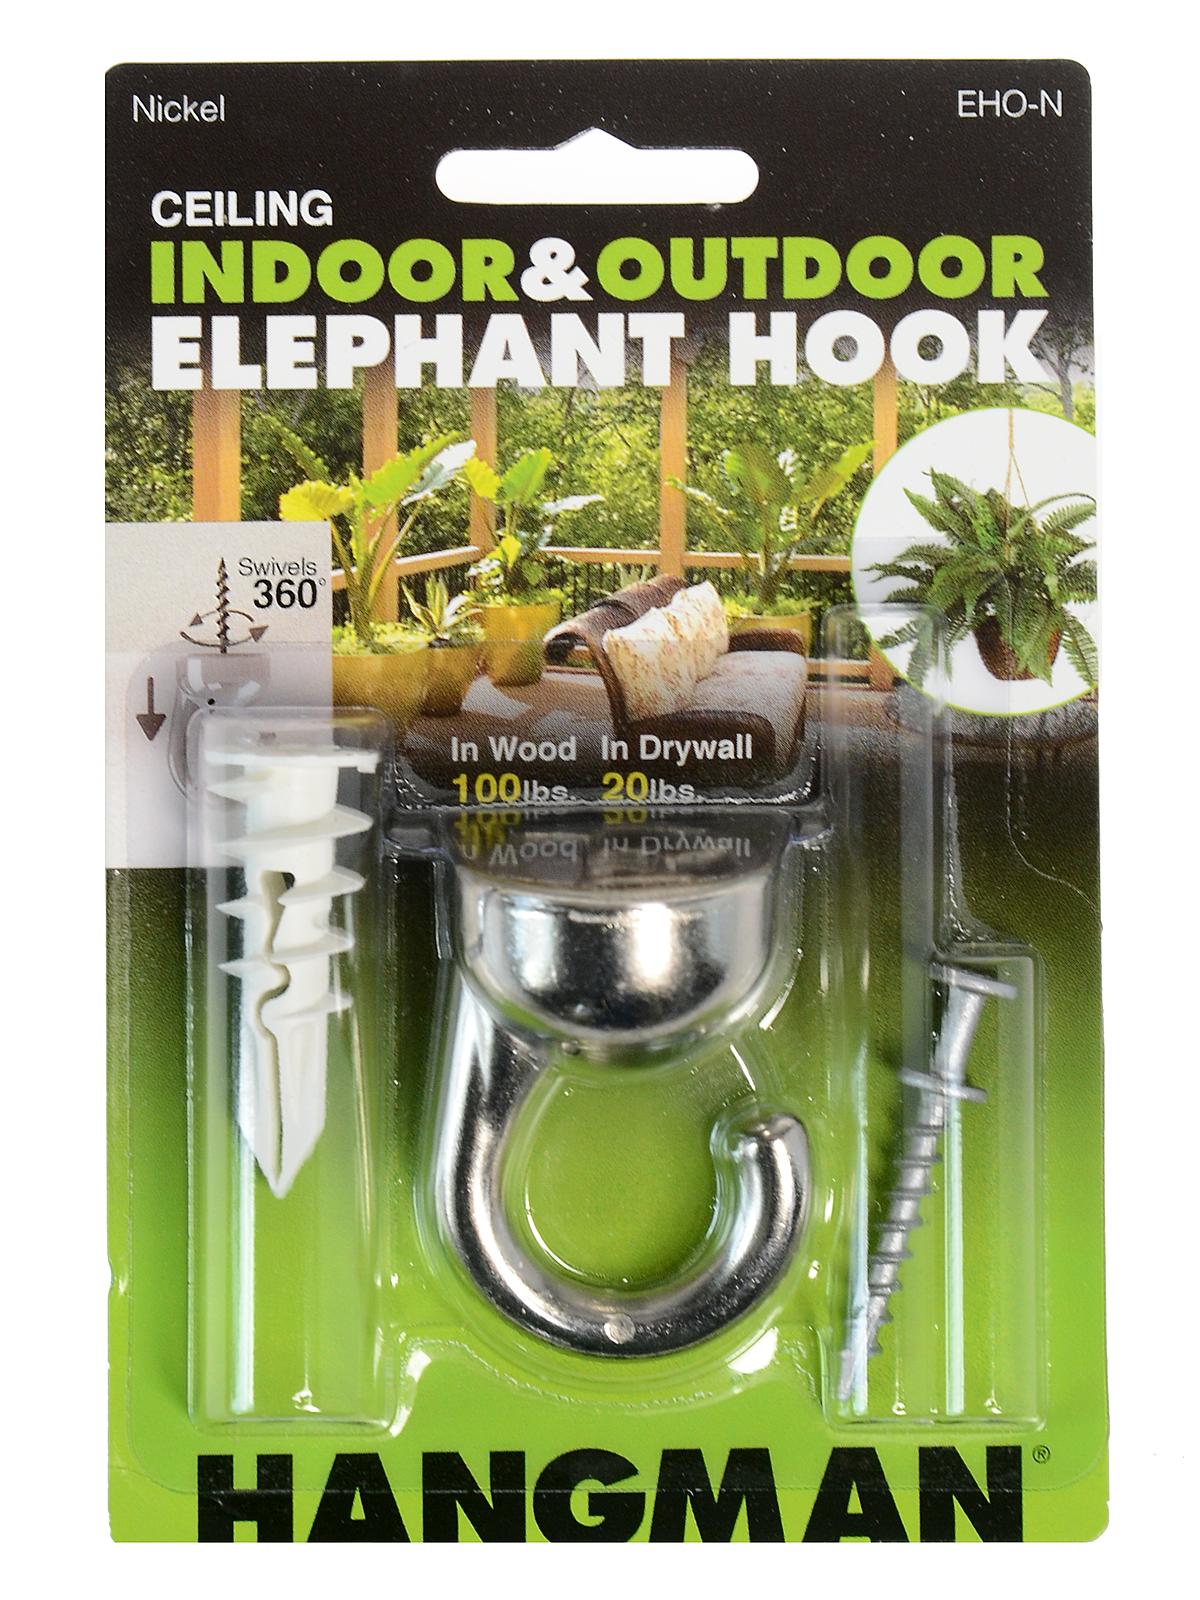 Outdoors Elephant Ceiling Hook Nickel